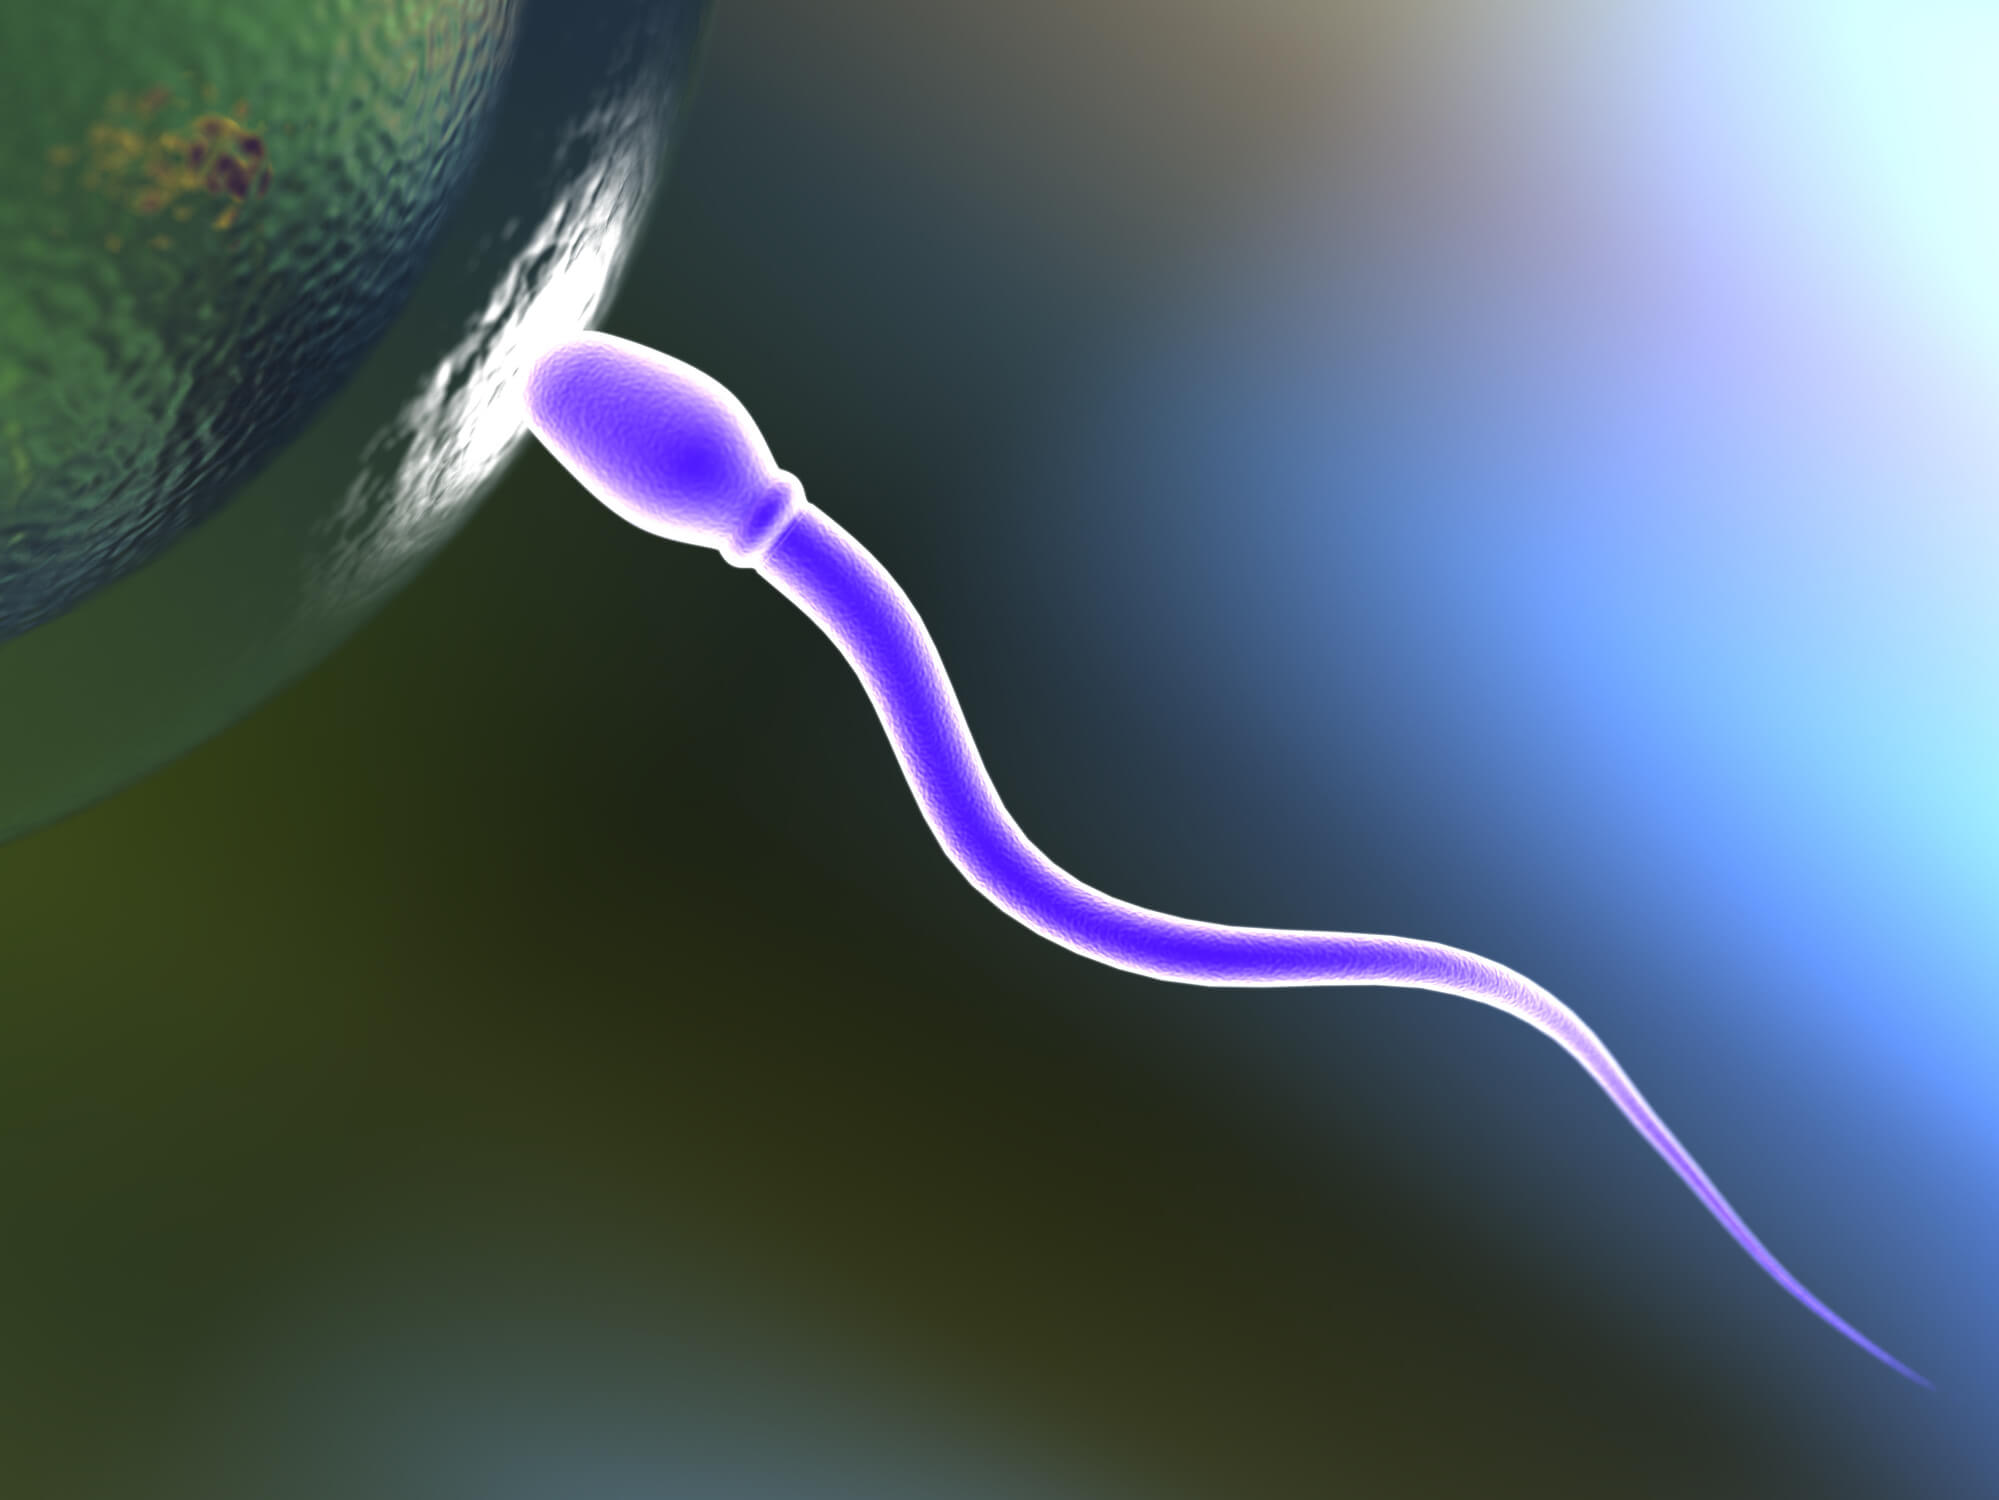 Descubra se o aspecto do sêmen pode ser sinal de infertilidade